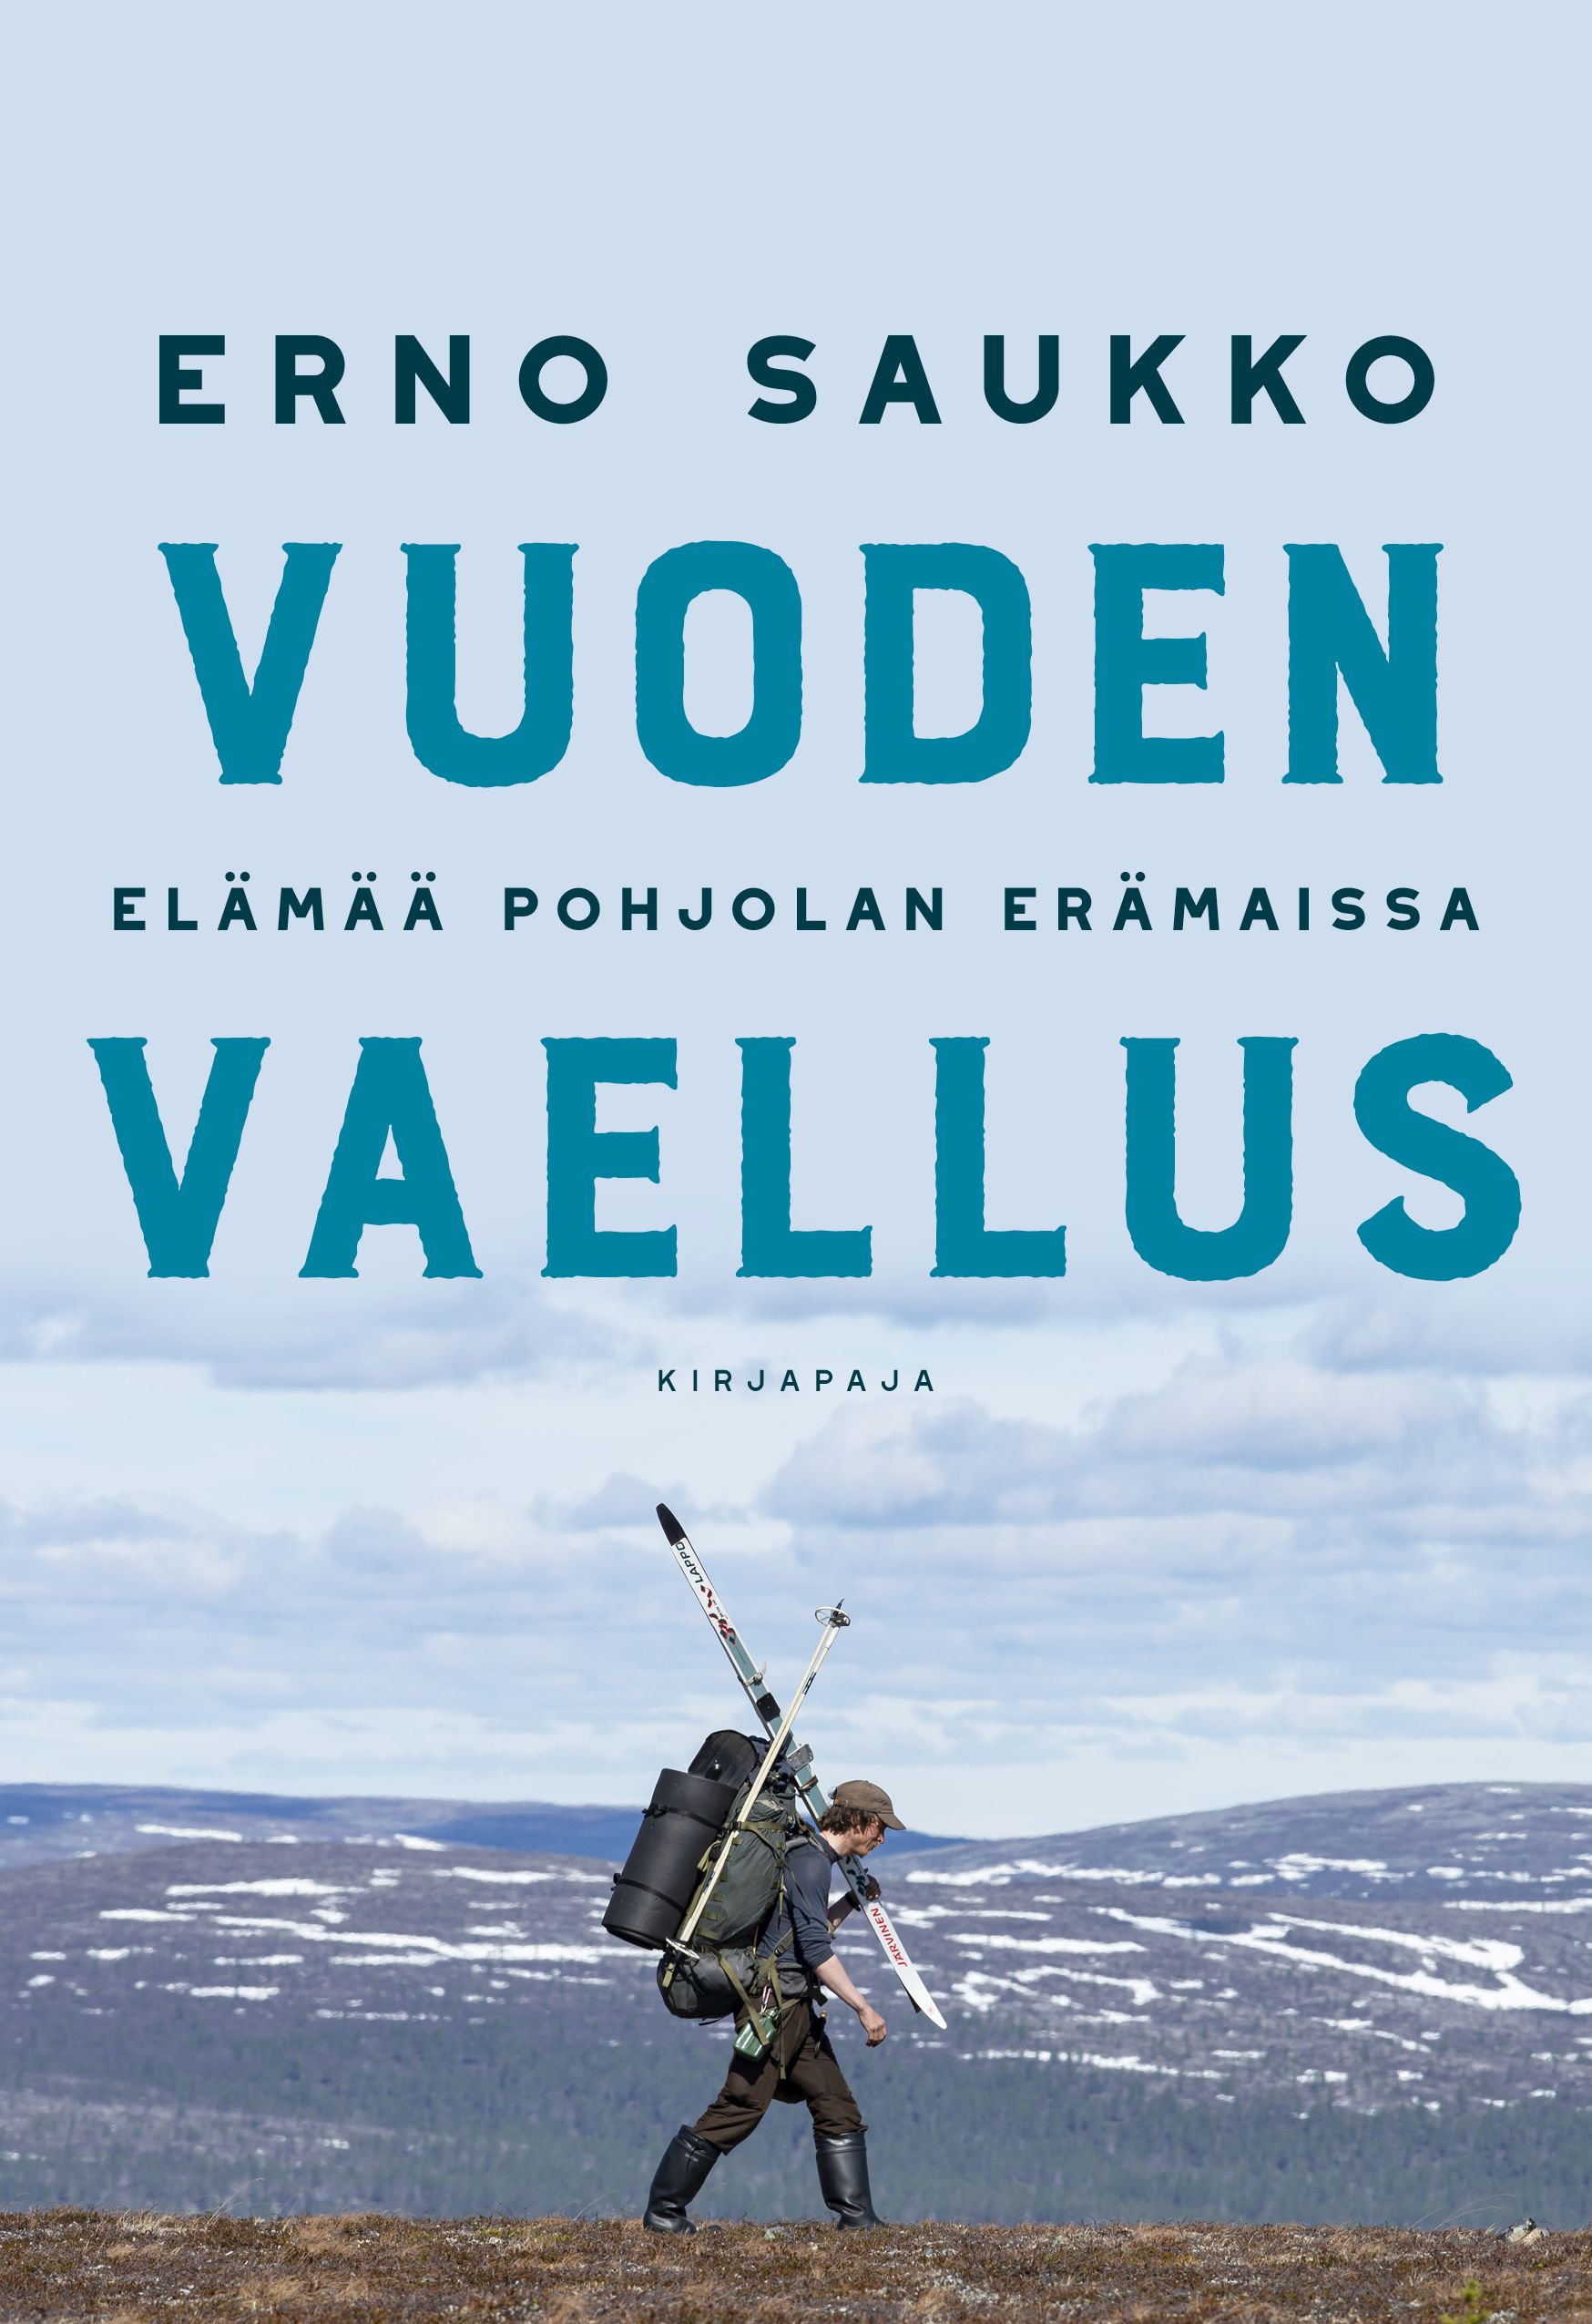 Erno Saukko : Vuoden vaellus